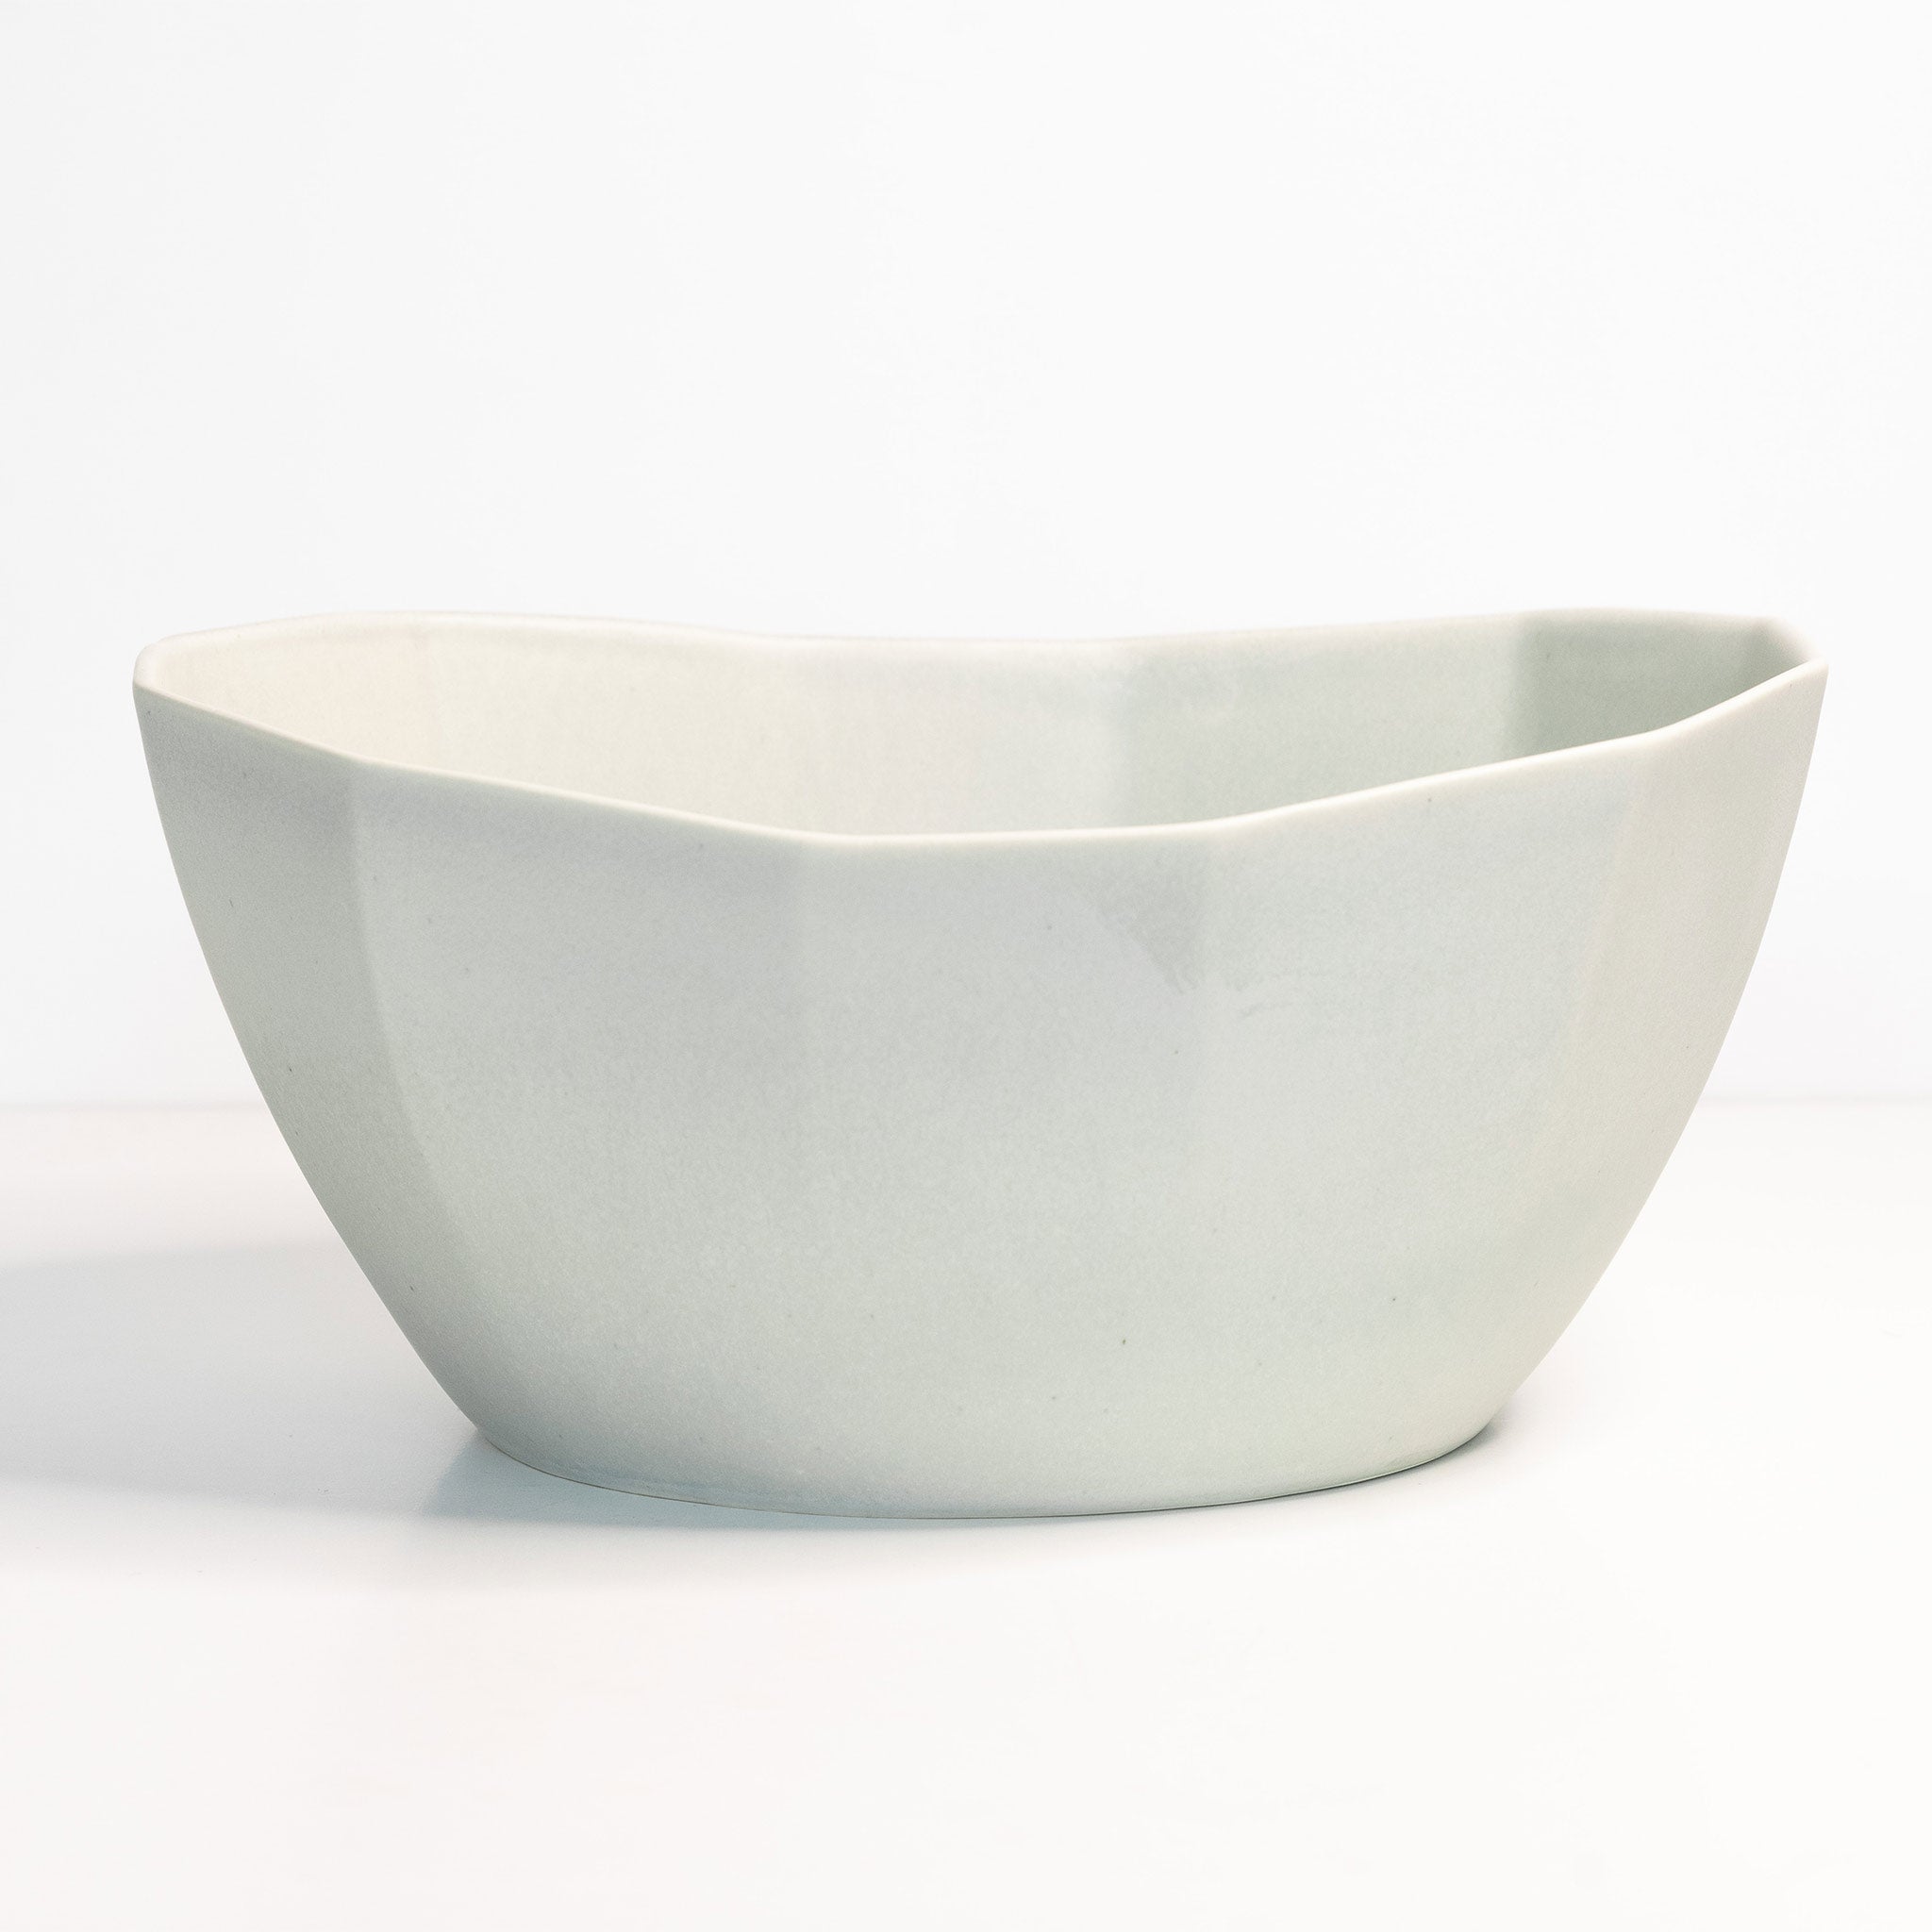 Large Porcelain Nesting Bowl Smoke Grey The Bright Angle